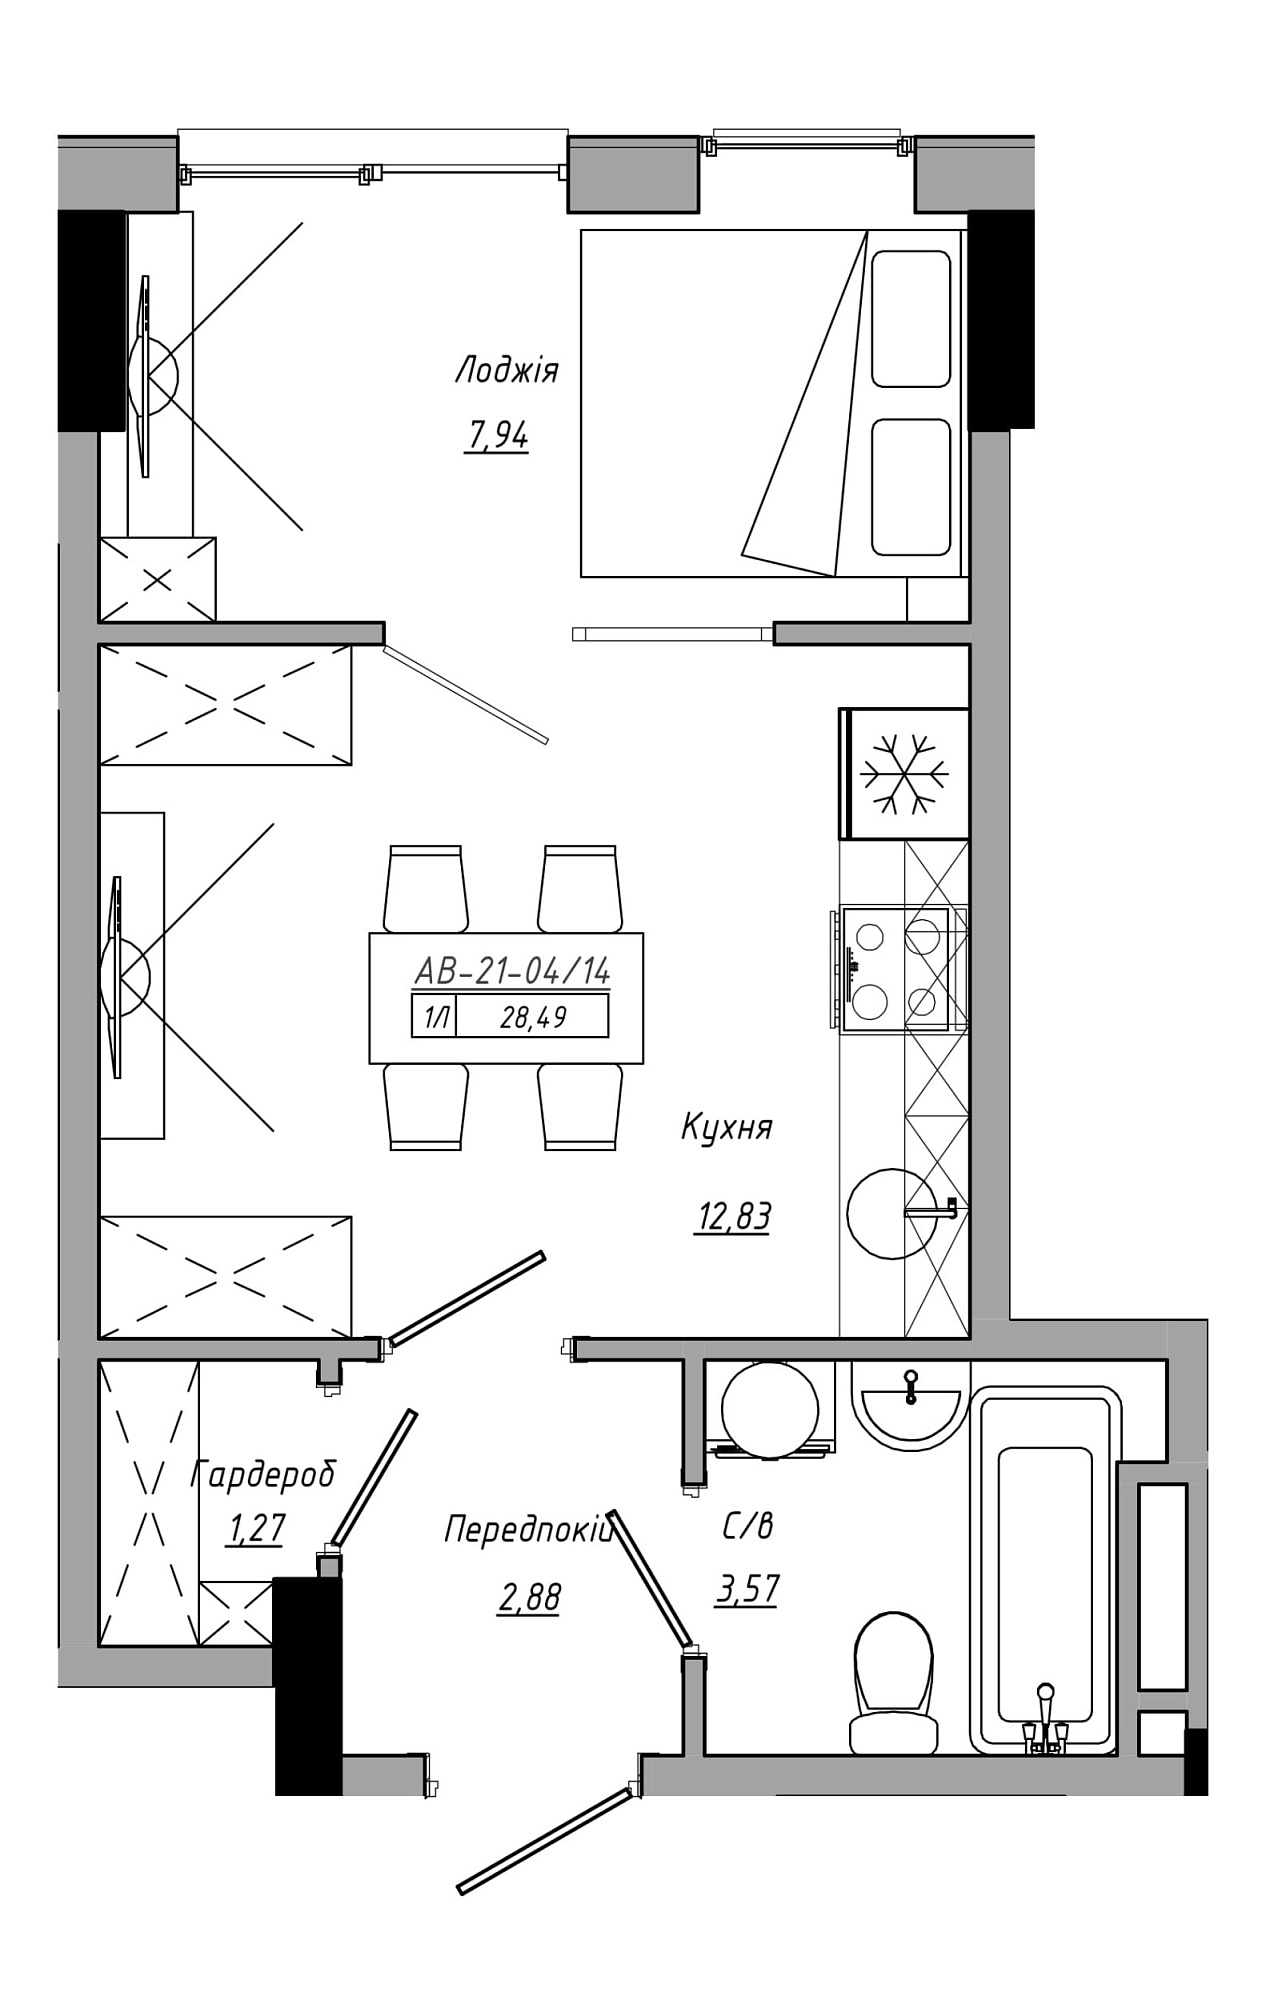 Планировка 1-к квартира площей 28.49м2, AB-21-04/00014.